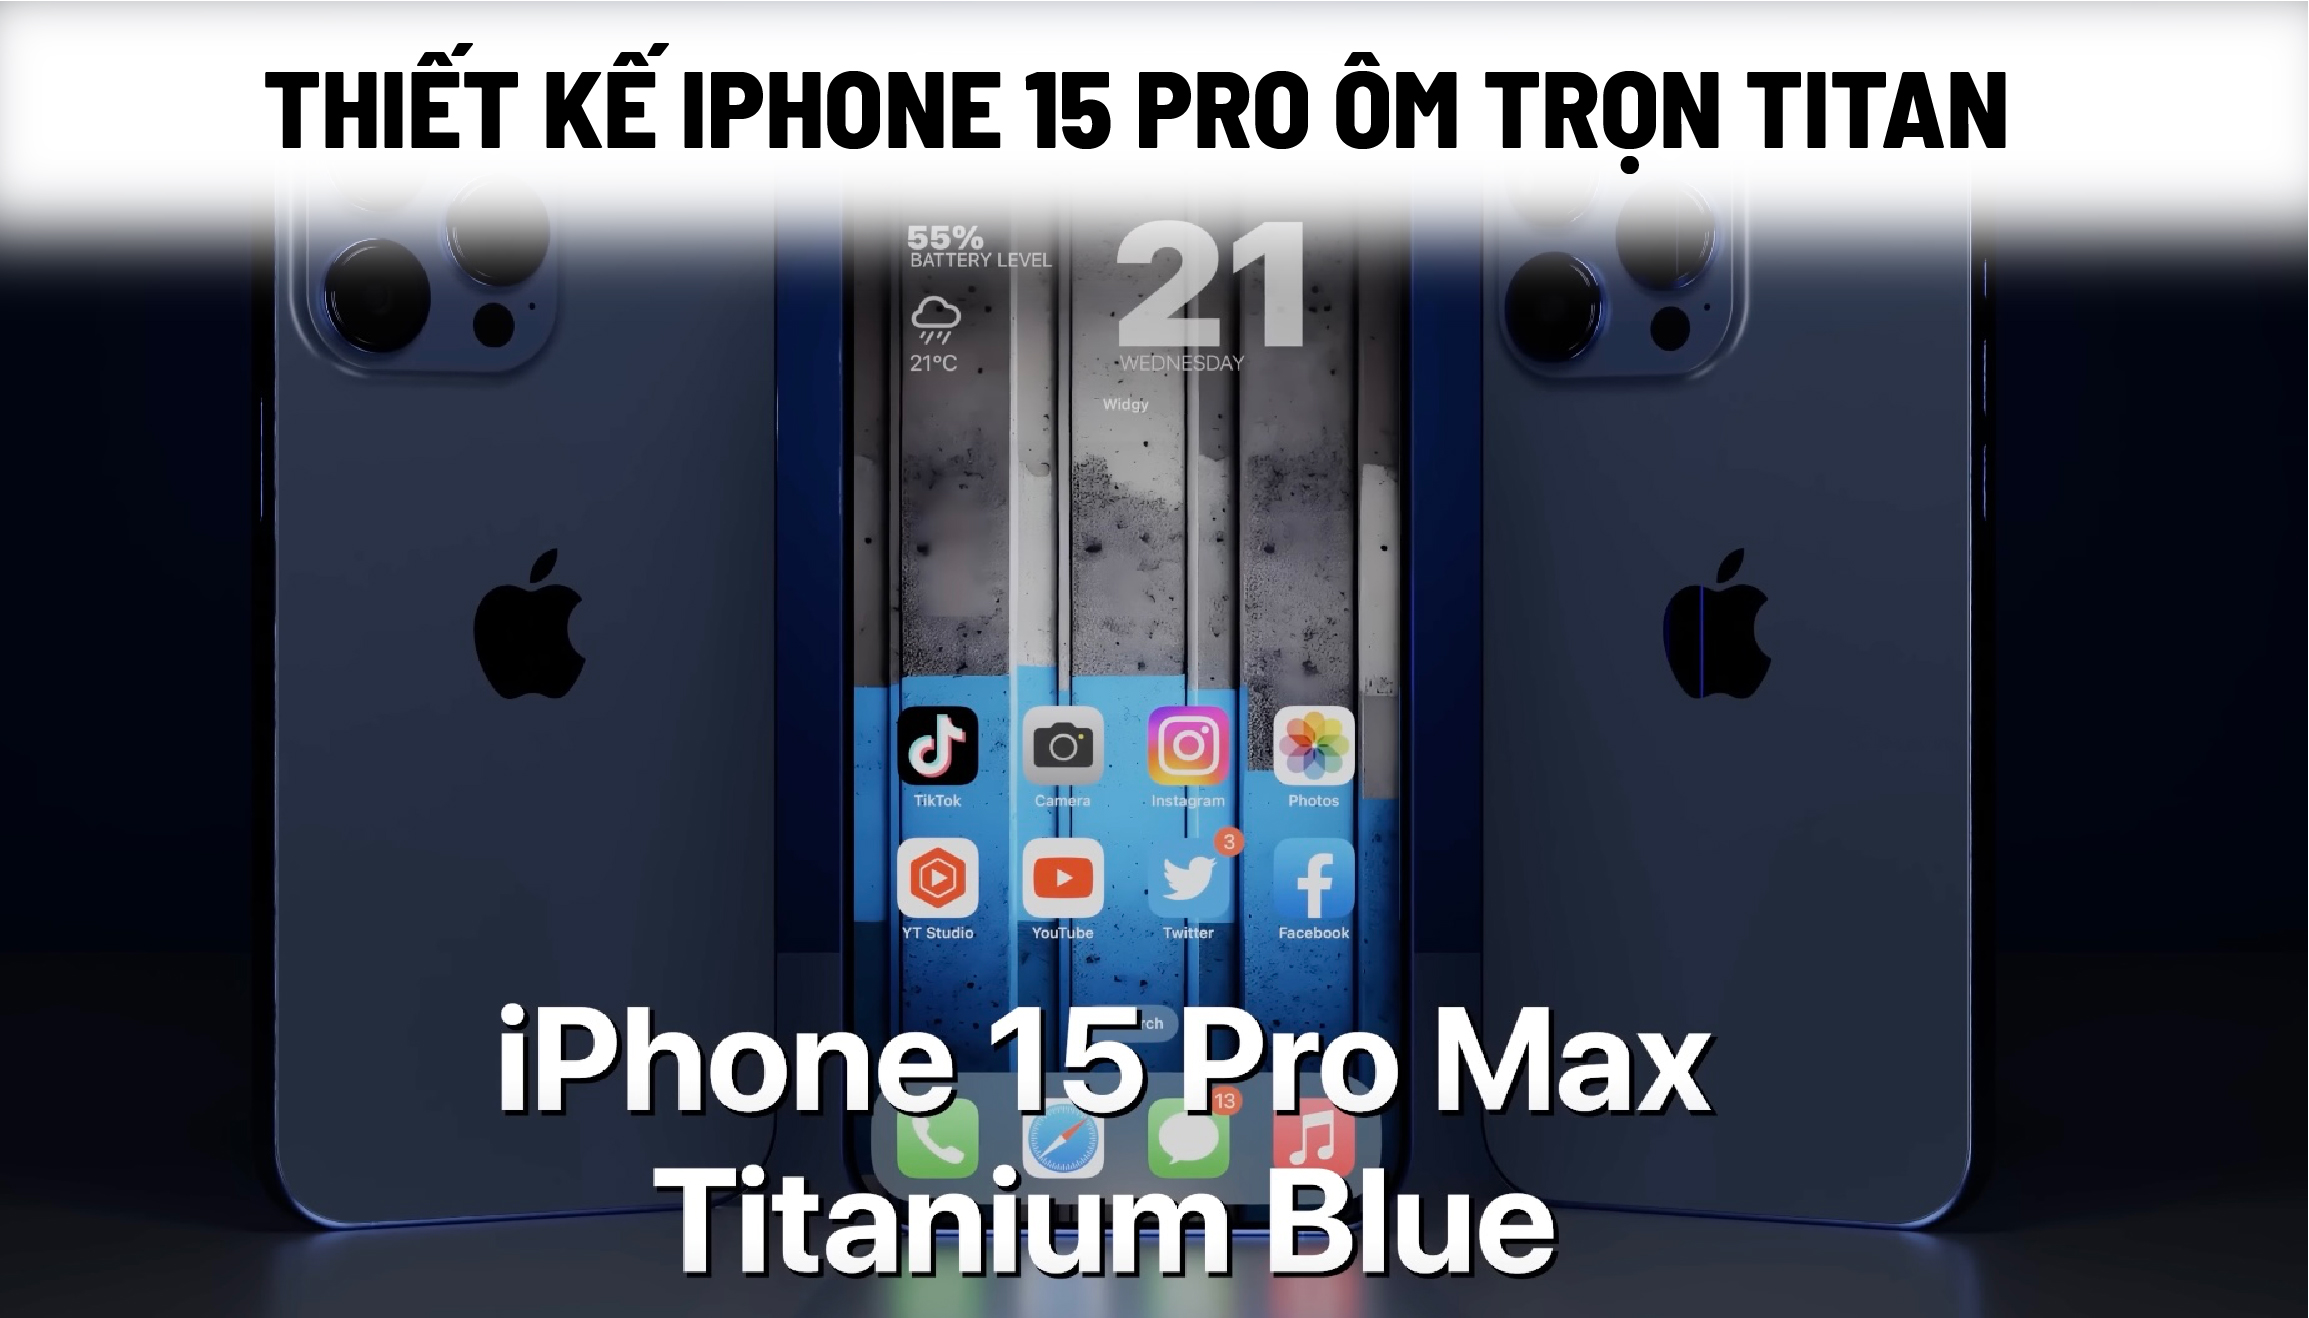 Thiết kế iPhone 15 Pro ôm trọn titan